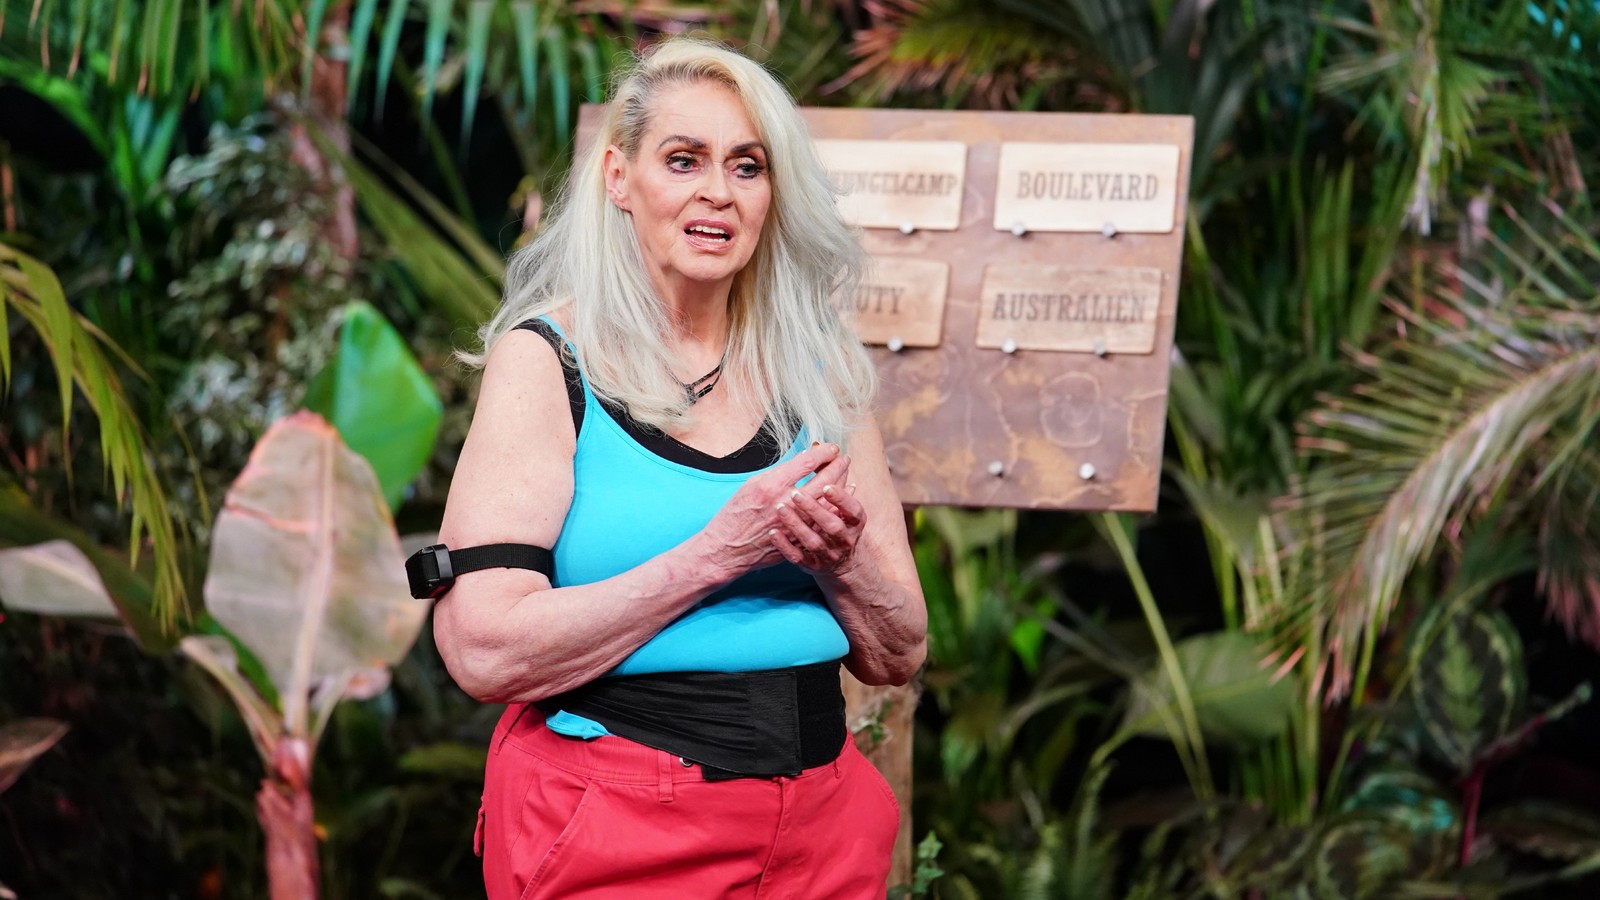 Dschungelshow-Kandidatin Bea Fiedler